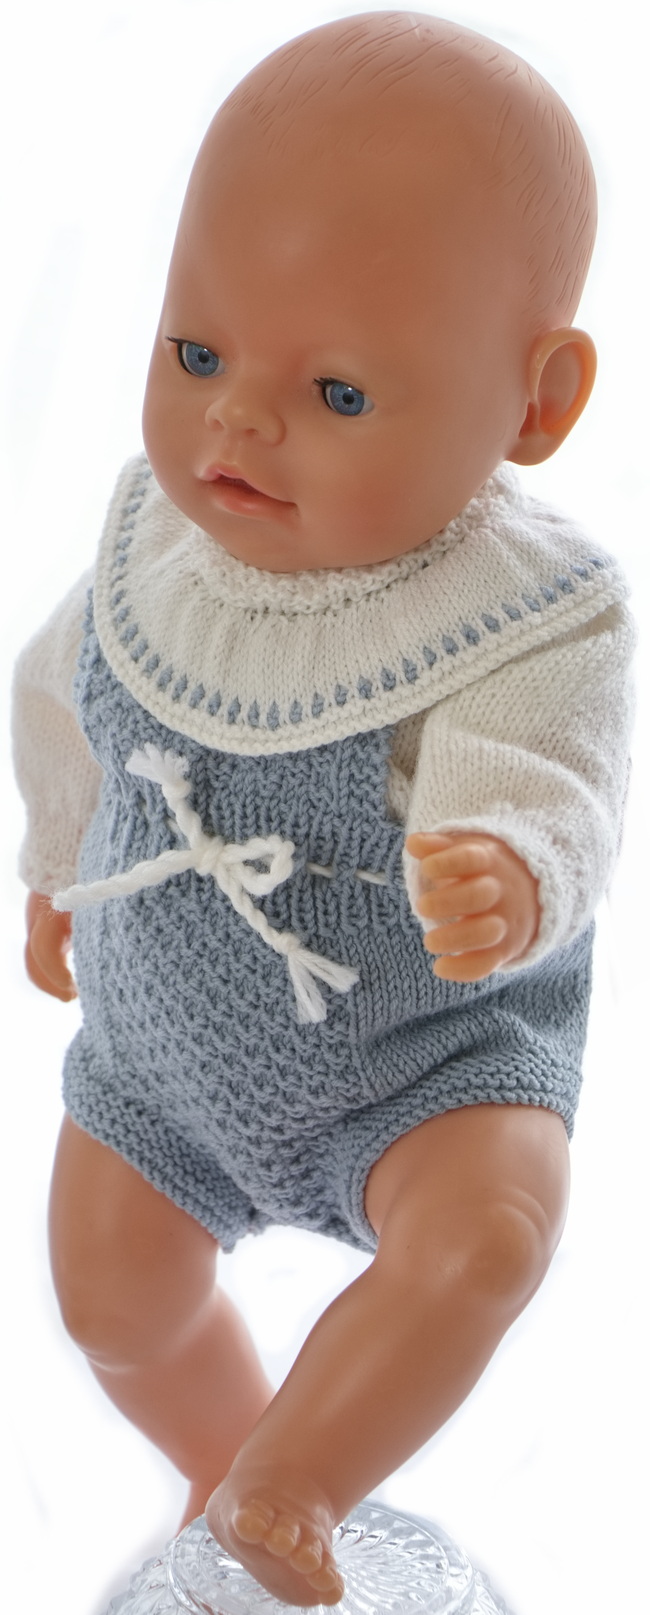 0243-20-knitting-pattern-for-baby-doll-romper.jpg